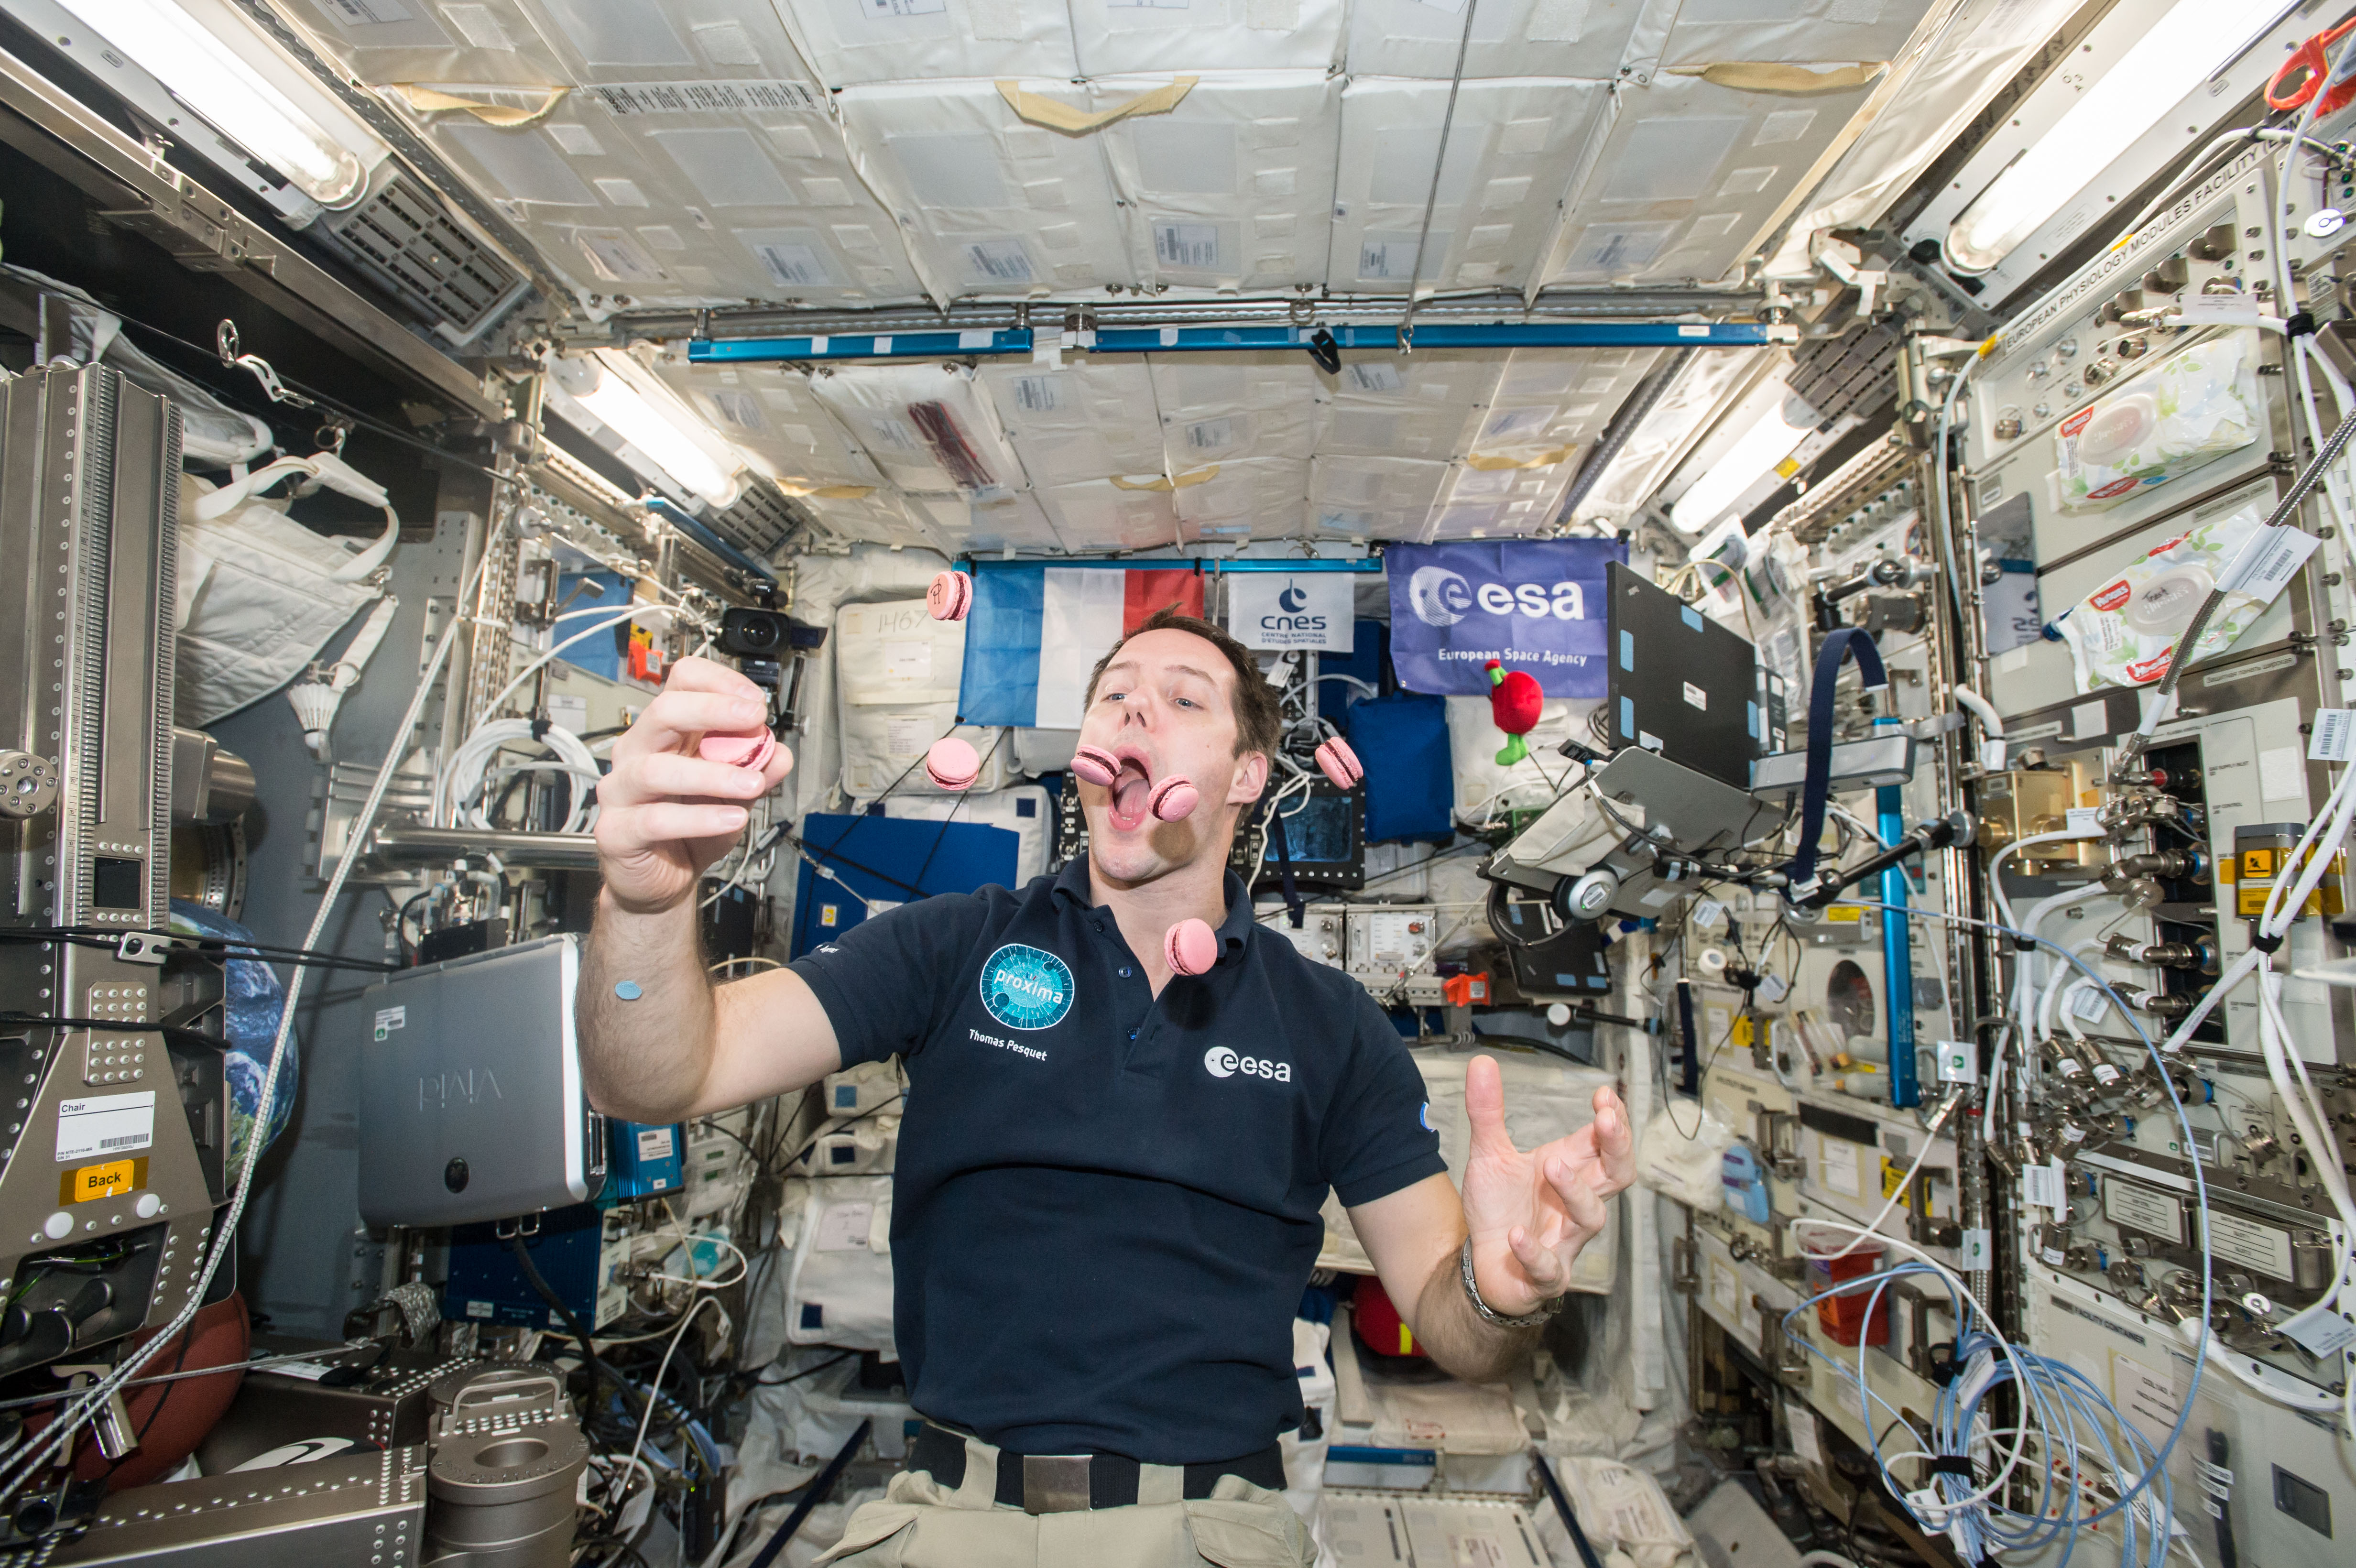 Условия на мкс. Кухня на МКС. Космонавт в космосе. Космонавт в невесомости. Космонавты на космической станции.